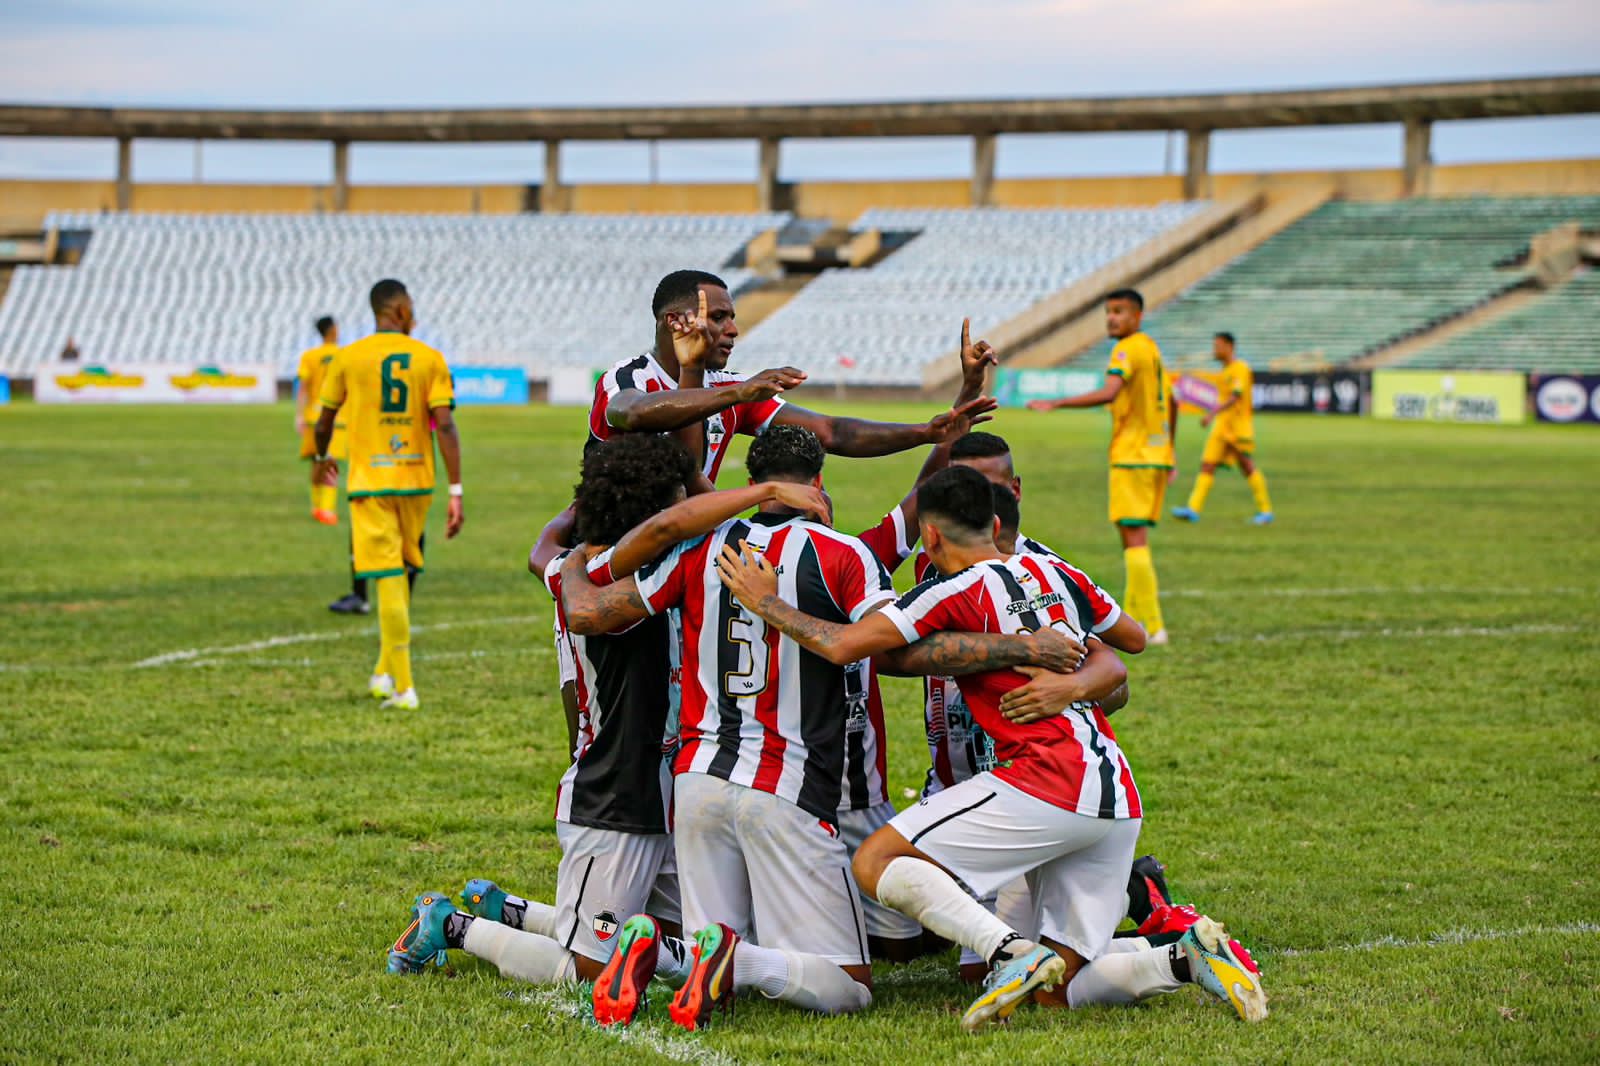 Com direito a golaço, River vence Picos na estreia do Campeonato Piauiense  - Cidadeverde.com